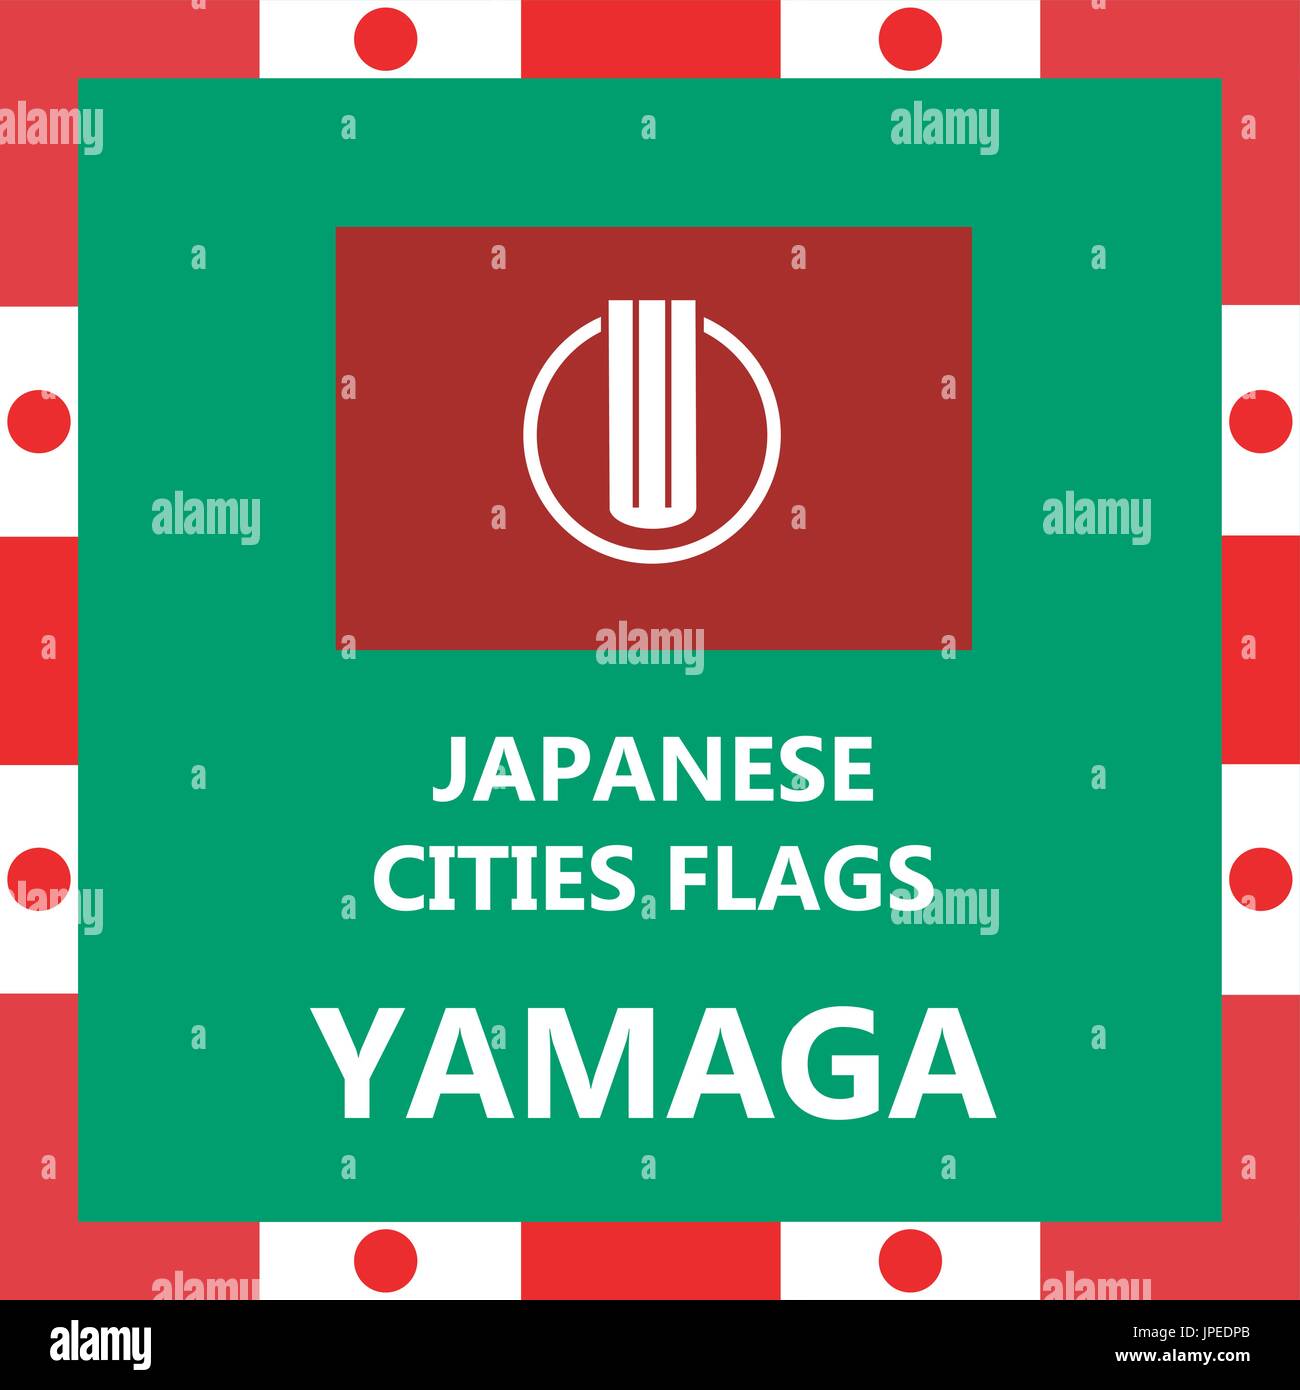 Pavillon de ville japonaise Yamaga Illustration de Vecteur